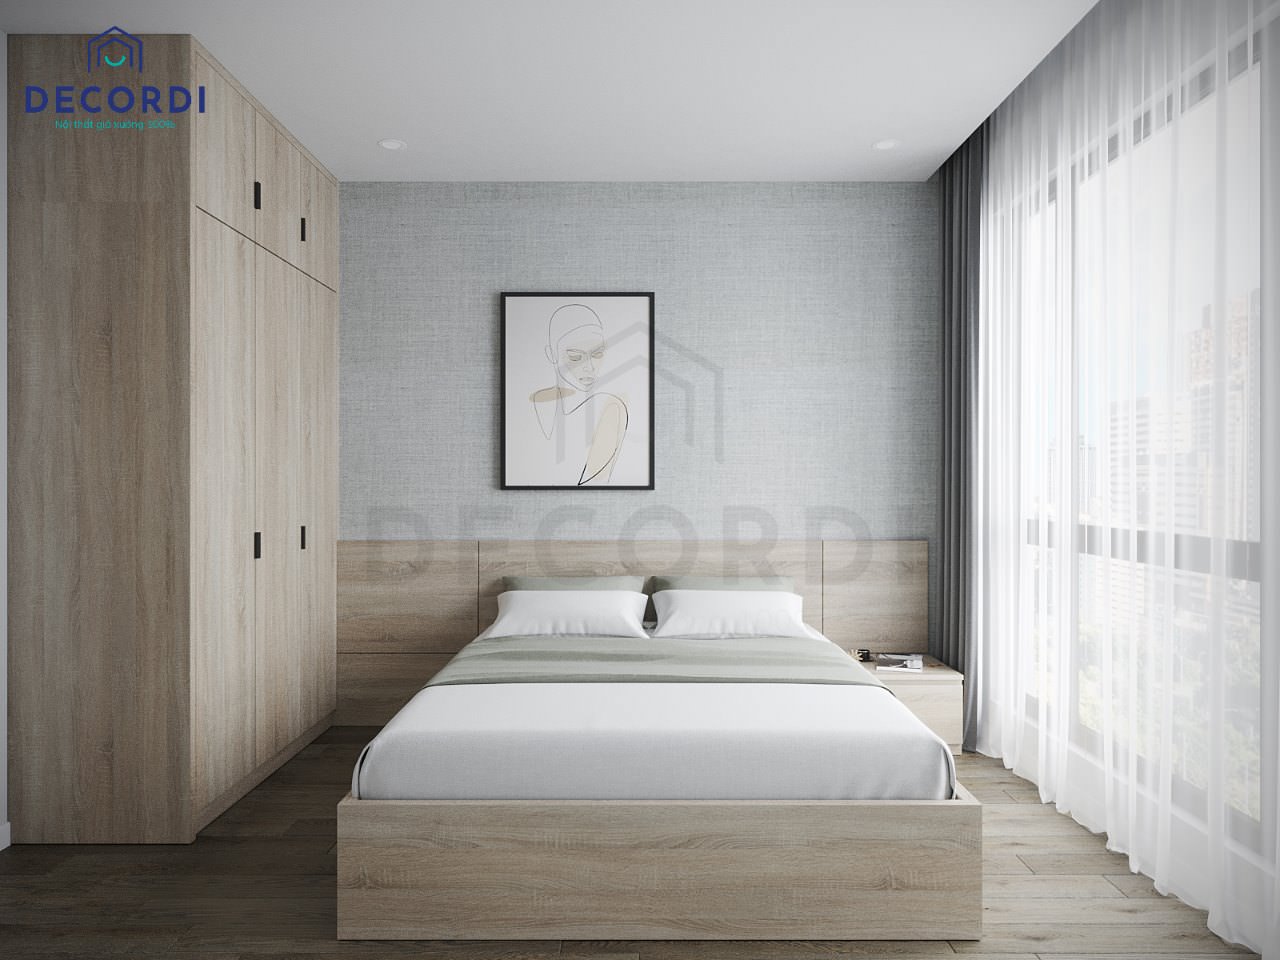 Phòng ngủ nhỏ bố trí nội thất đơn Giường ngủ nhỏ 1m6 với kiểu dáng nhẹ nhàng đơn giản